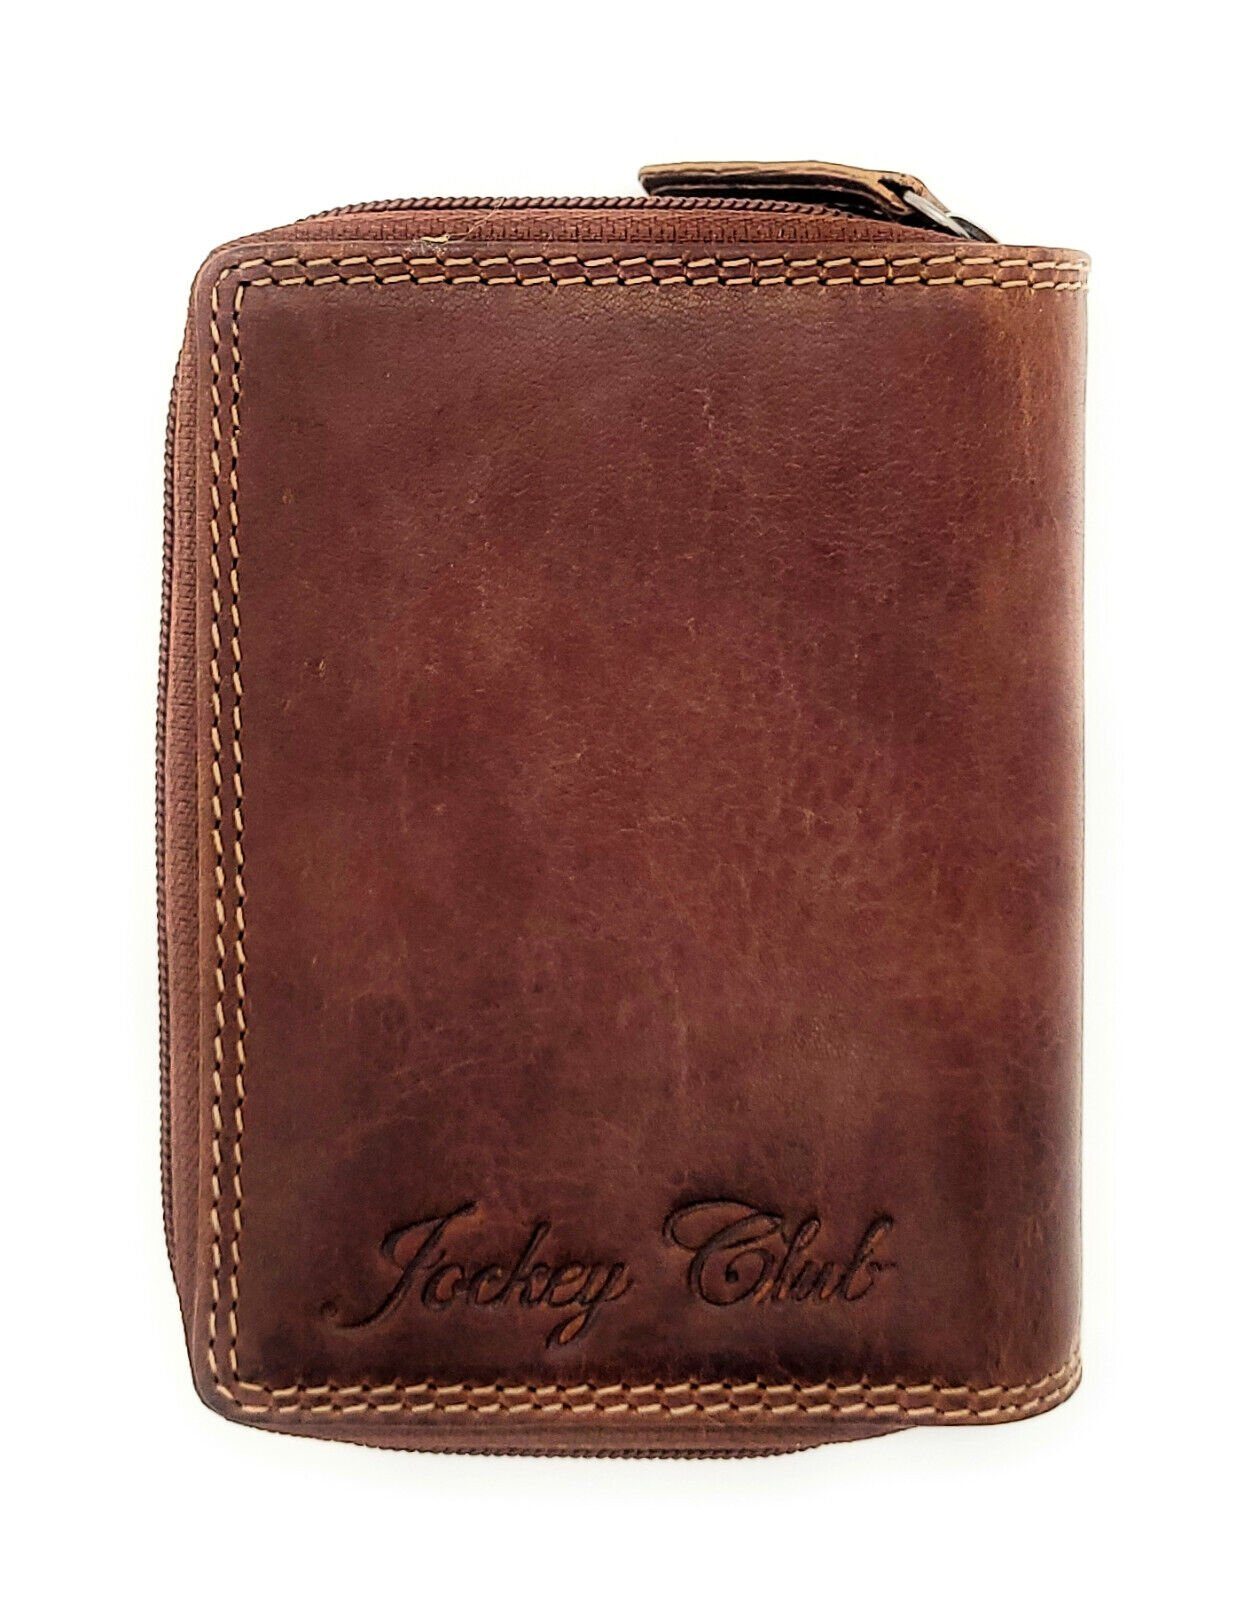 JOCKEY Sauvage CLUB Rindleder, mit braun RFID kompakt & Schutz, handlich, Portemonnaie Leder Mini Geldbörse echt cognac Damen